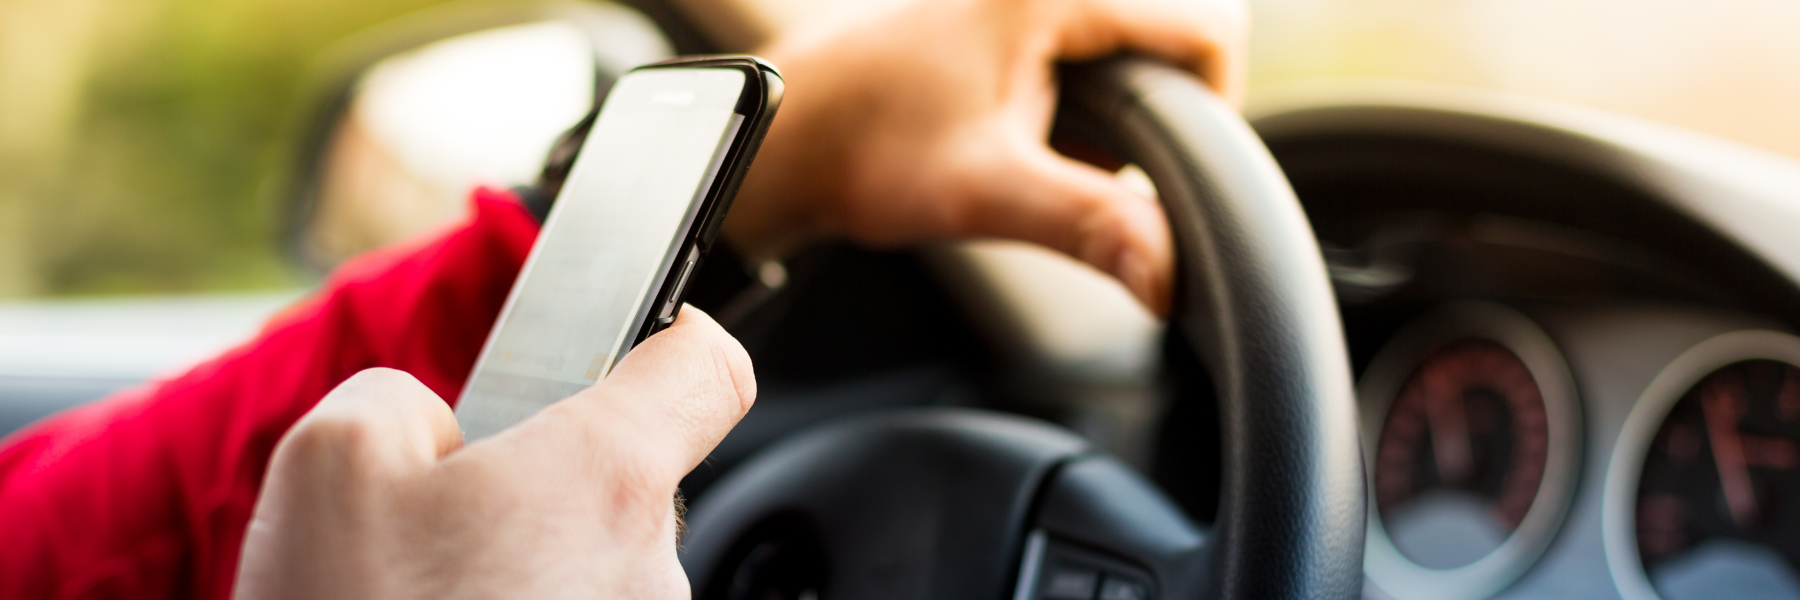 El texting una causa creciente en accidentes de automóviles